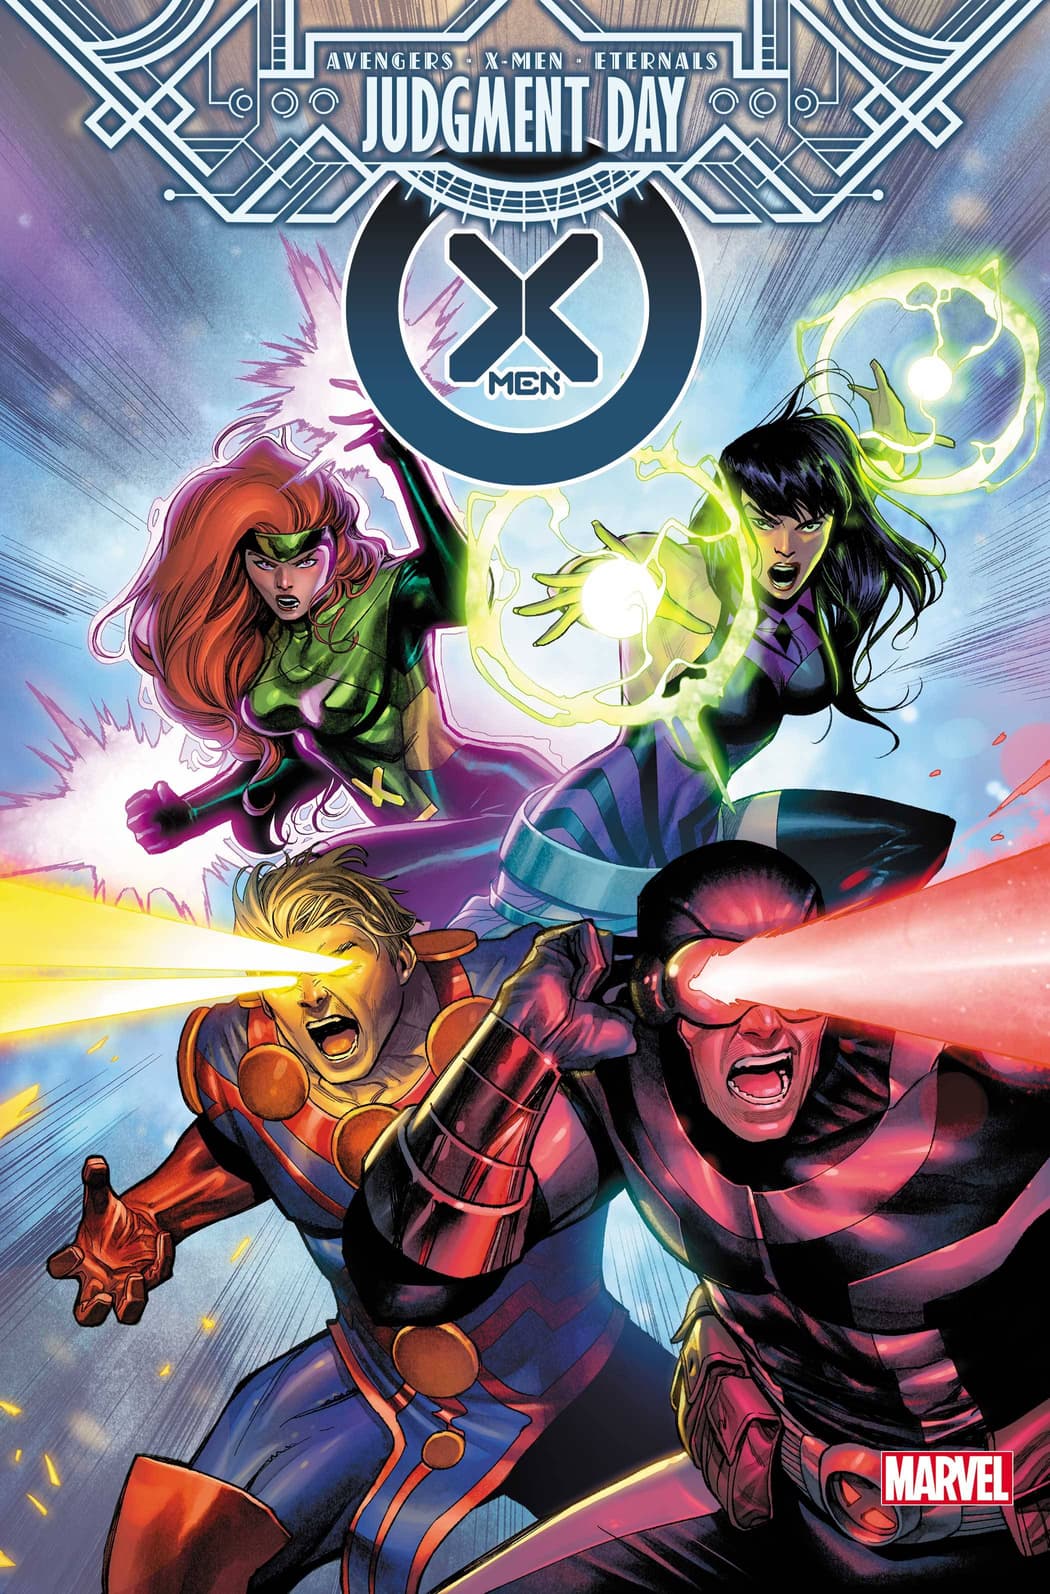 X-MEN #13 cover by Martin Coccolo